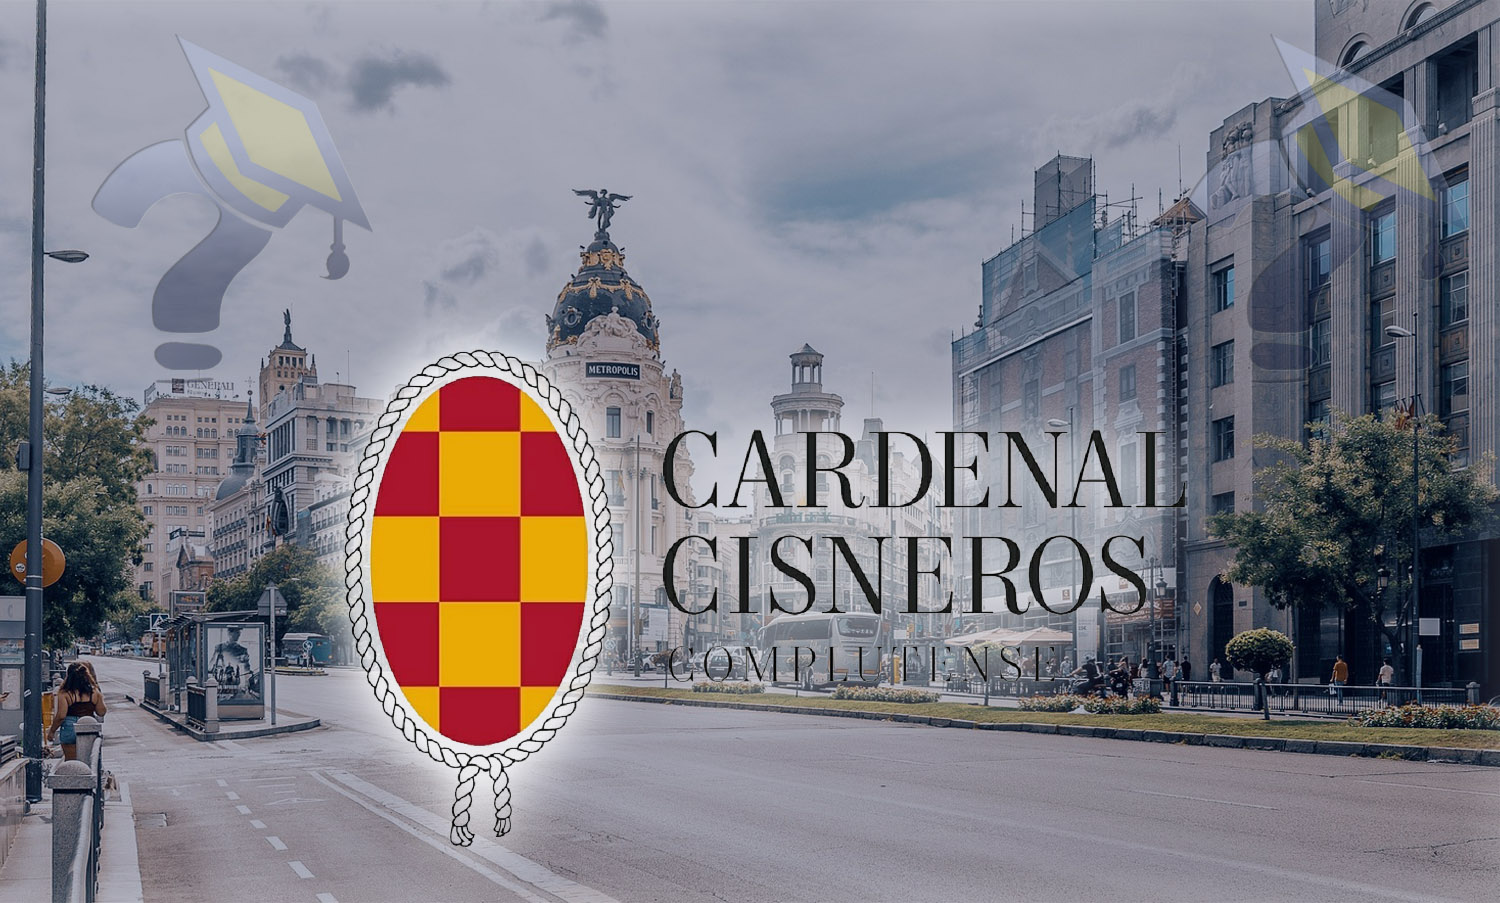 Centro de Enseñanza Superior Cardenal Cisneros